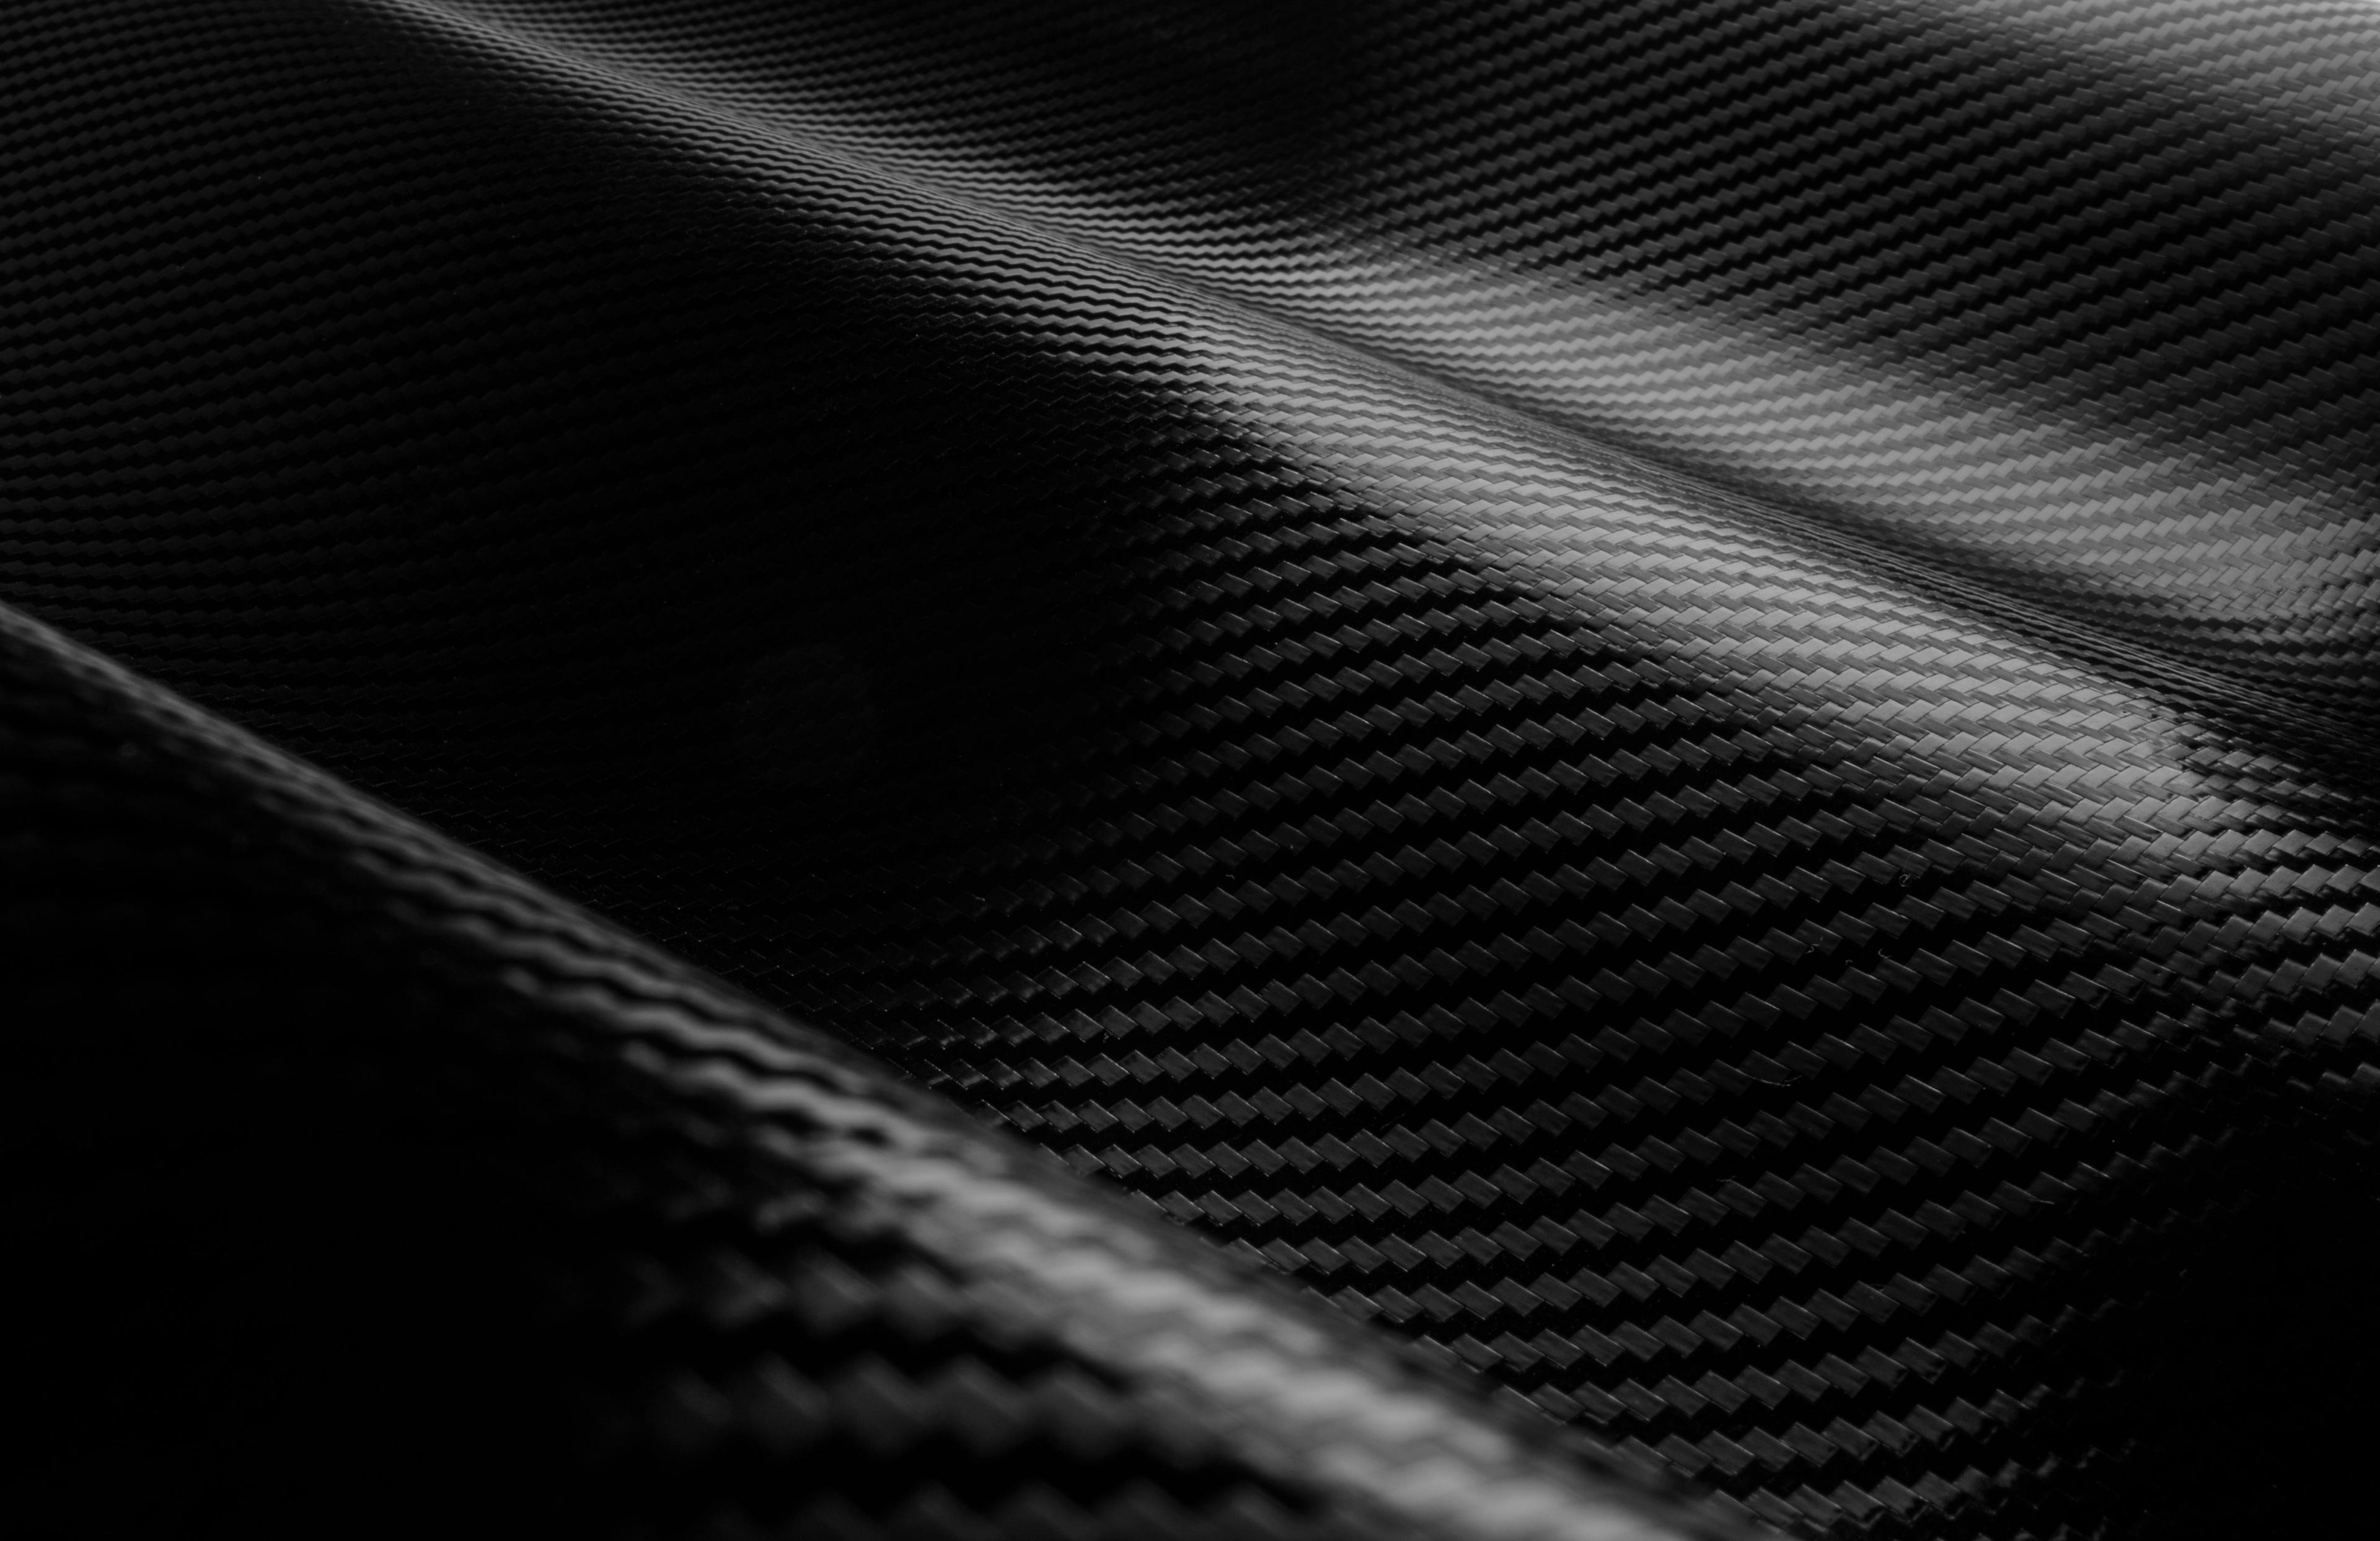 Carbon Fiber Texture | Image Credit: © Septimiu - stock.adobe.com